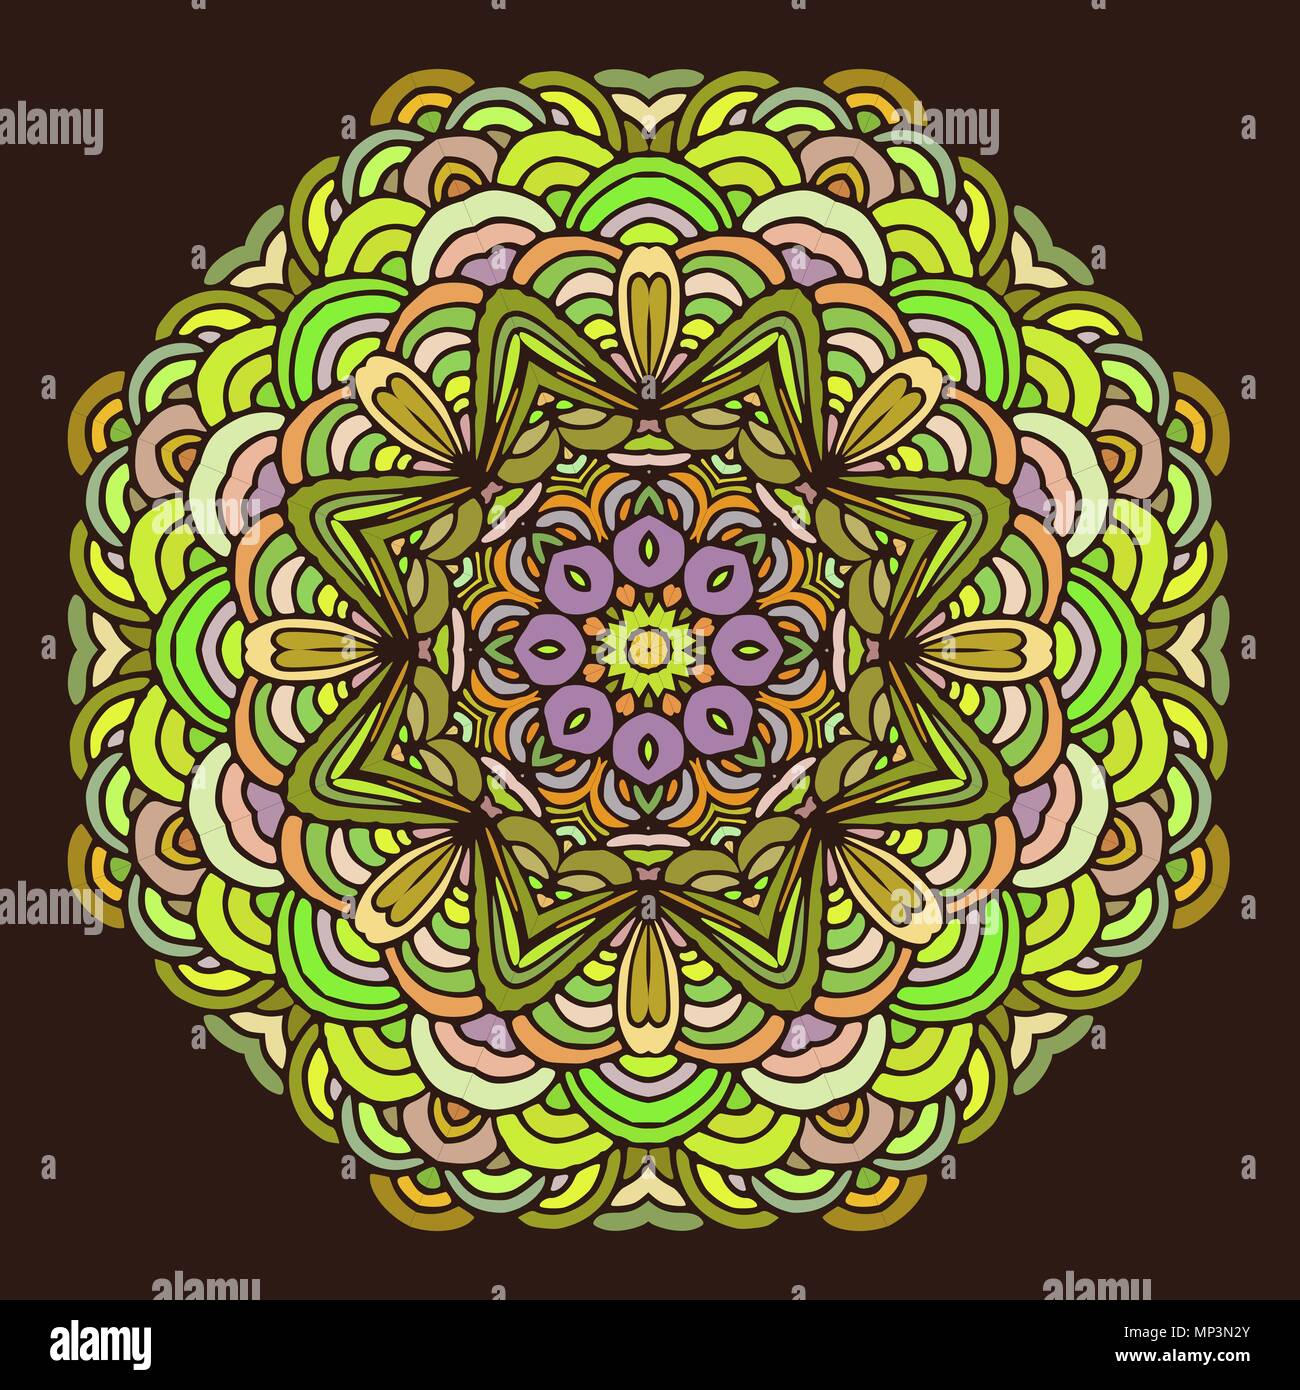 Mandala bunte Hand gezeichneten Muster auf dunklem Hintergrund. Geometrische Kreis Motiv für Design, Einladungskarten und Elemente für Yoga Symbol etc. Stock Vektor